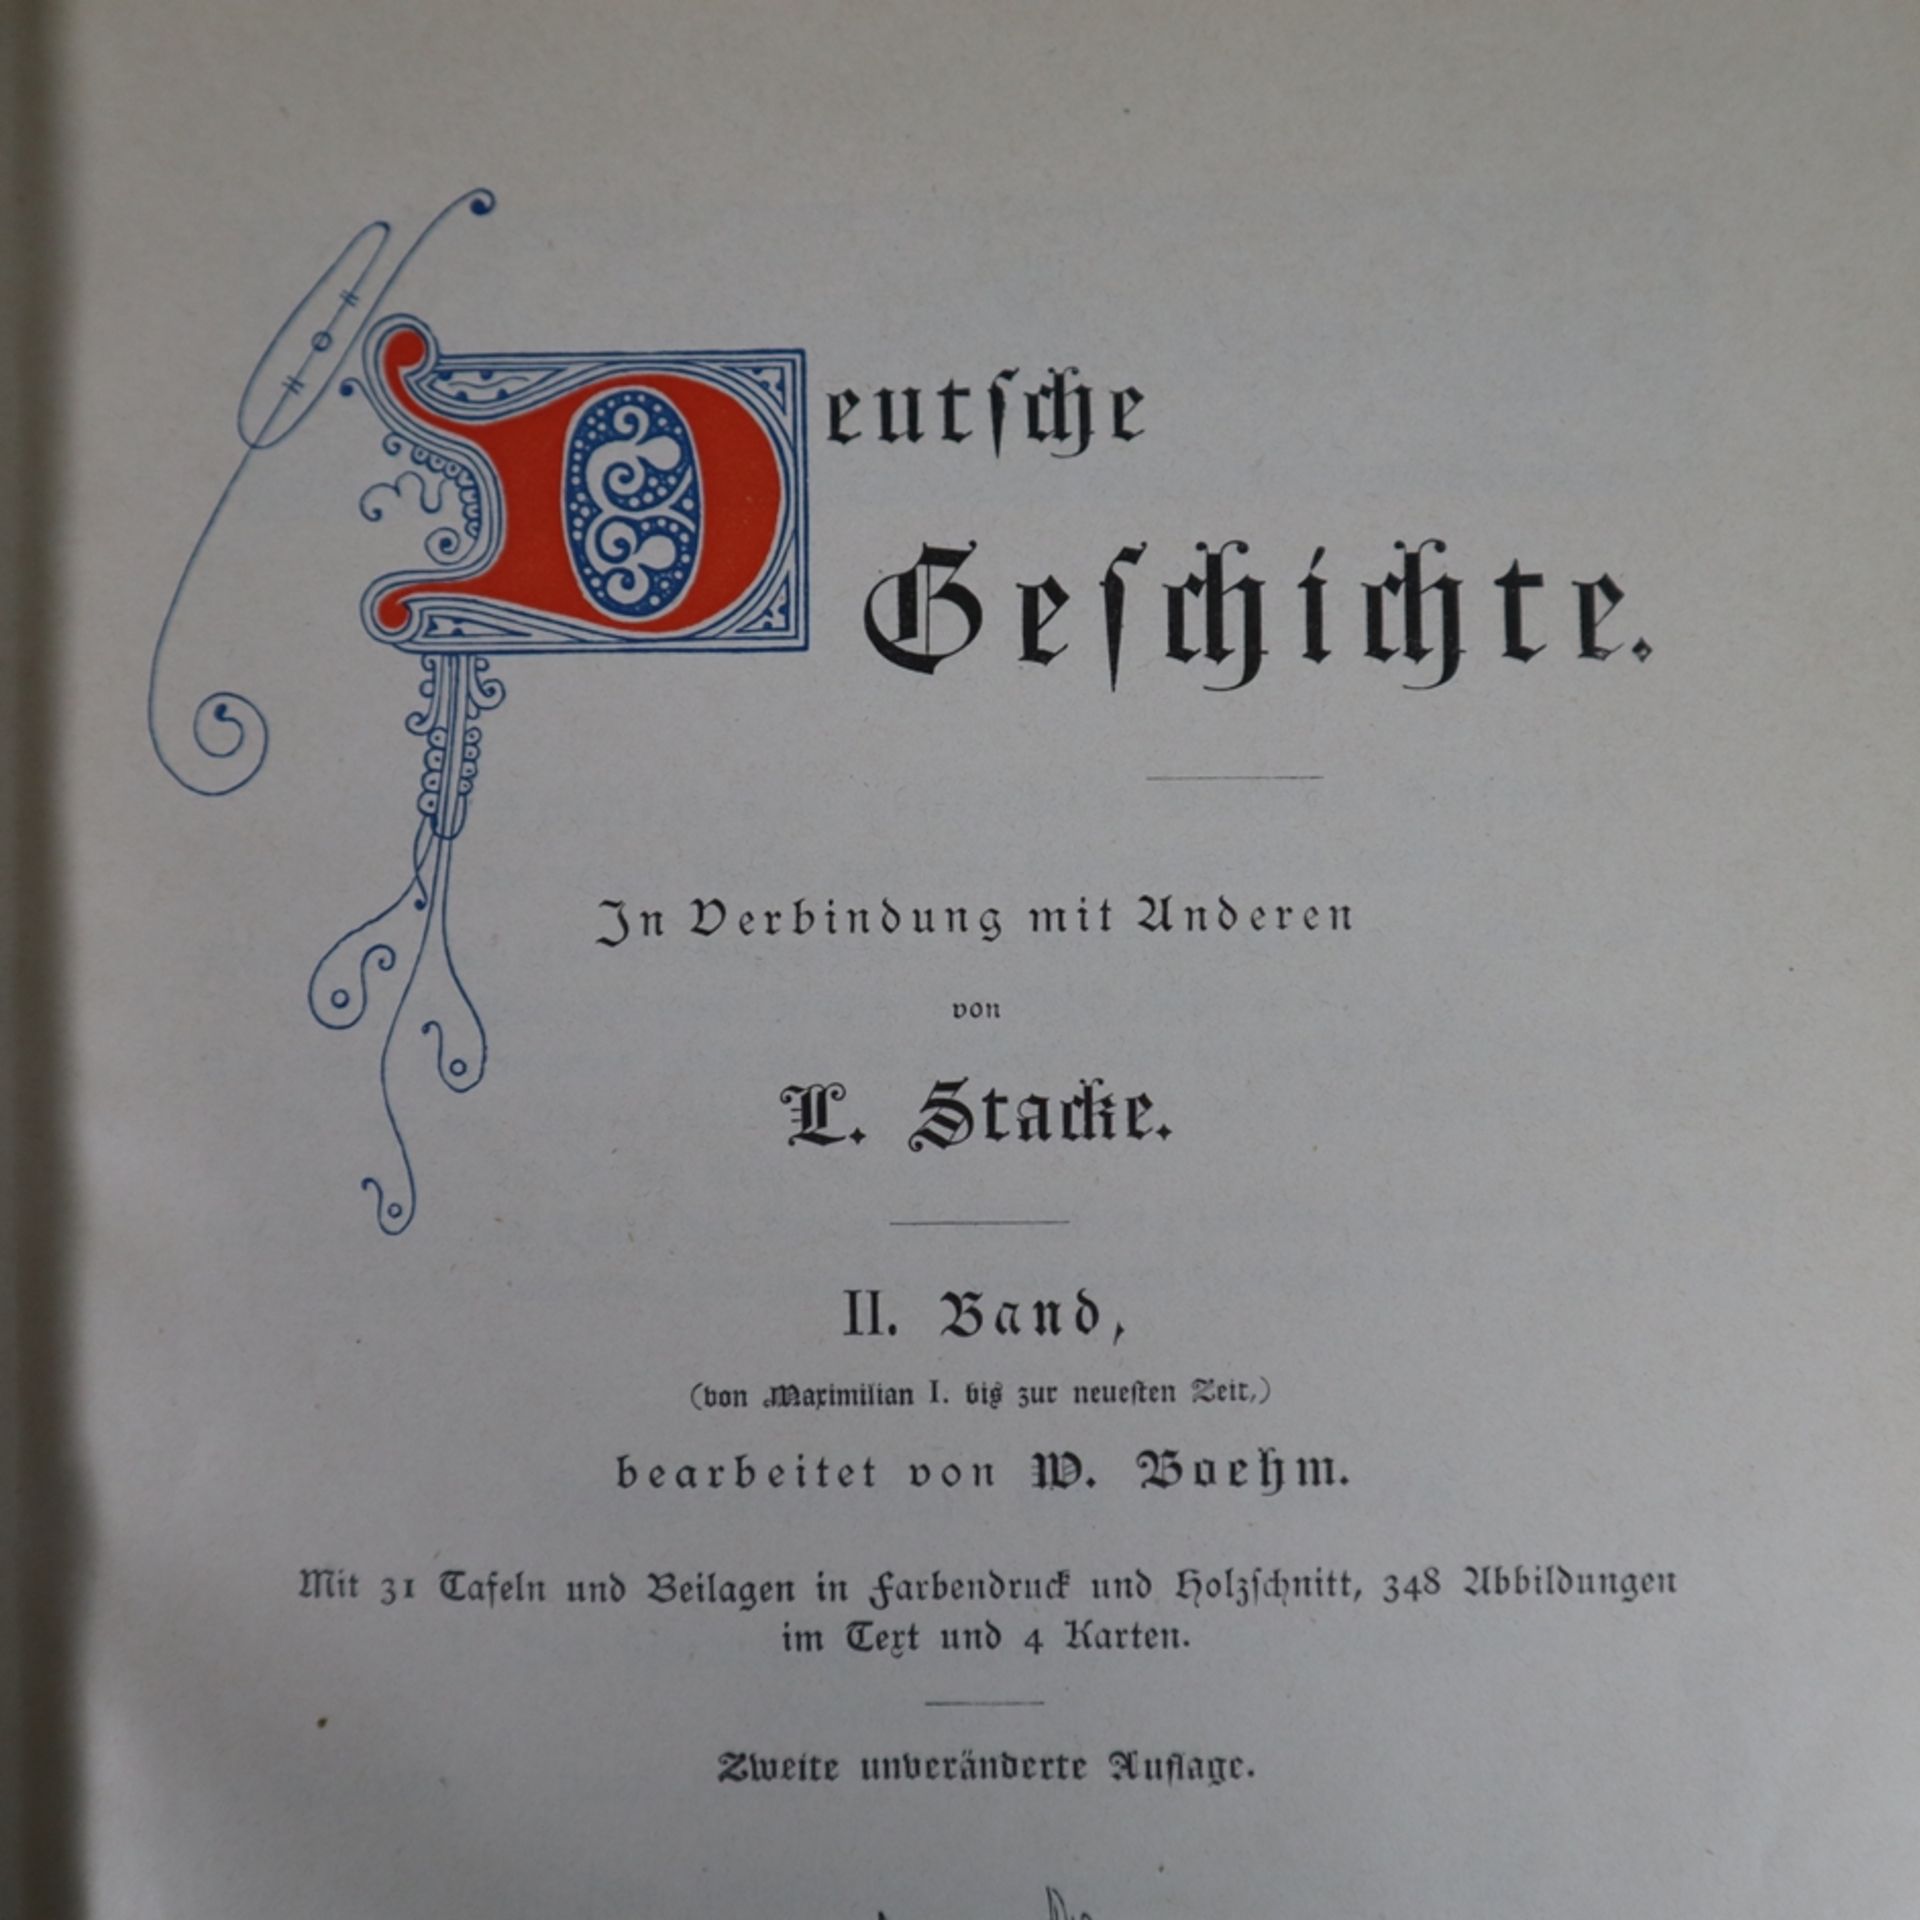 Deutsche Geschichte von L. Stacke - 2 Bände, zweite Auflage, Verlag von Velhagen & Klasing, Bielefe - Image 2 of 8